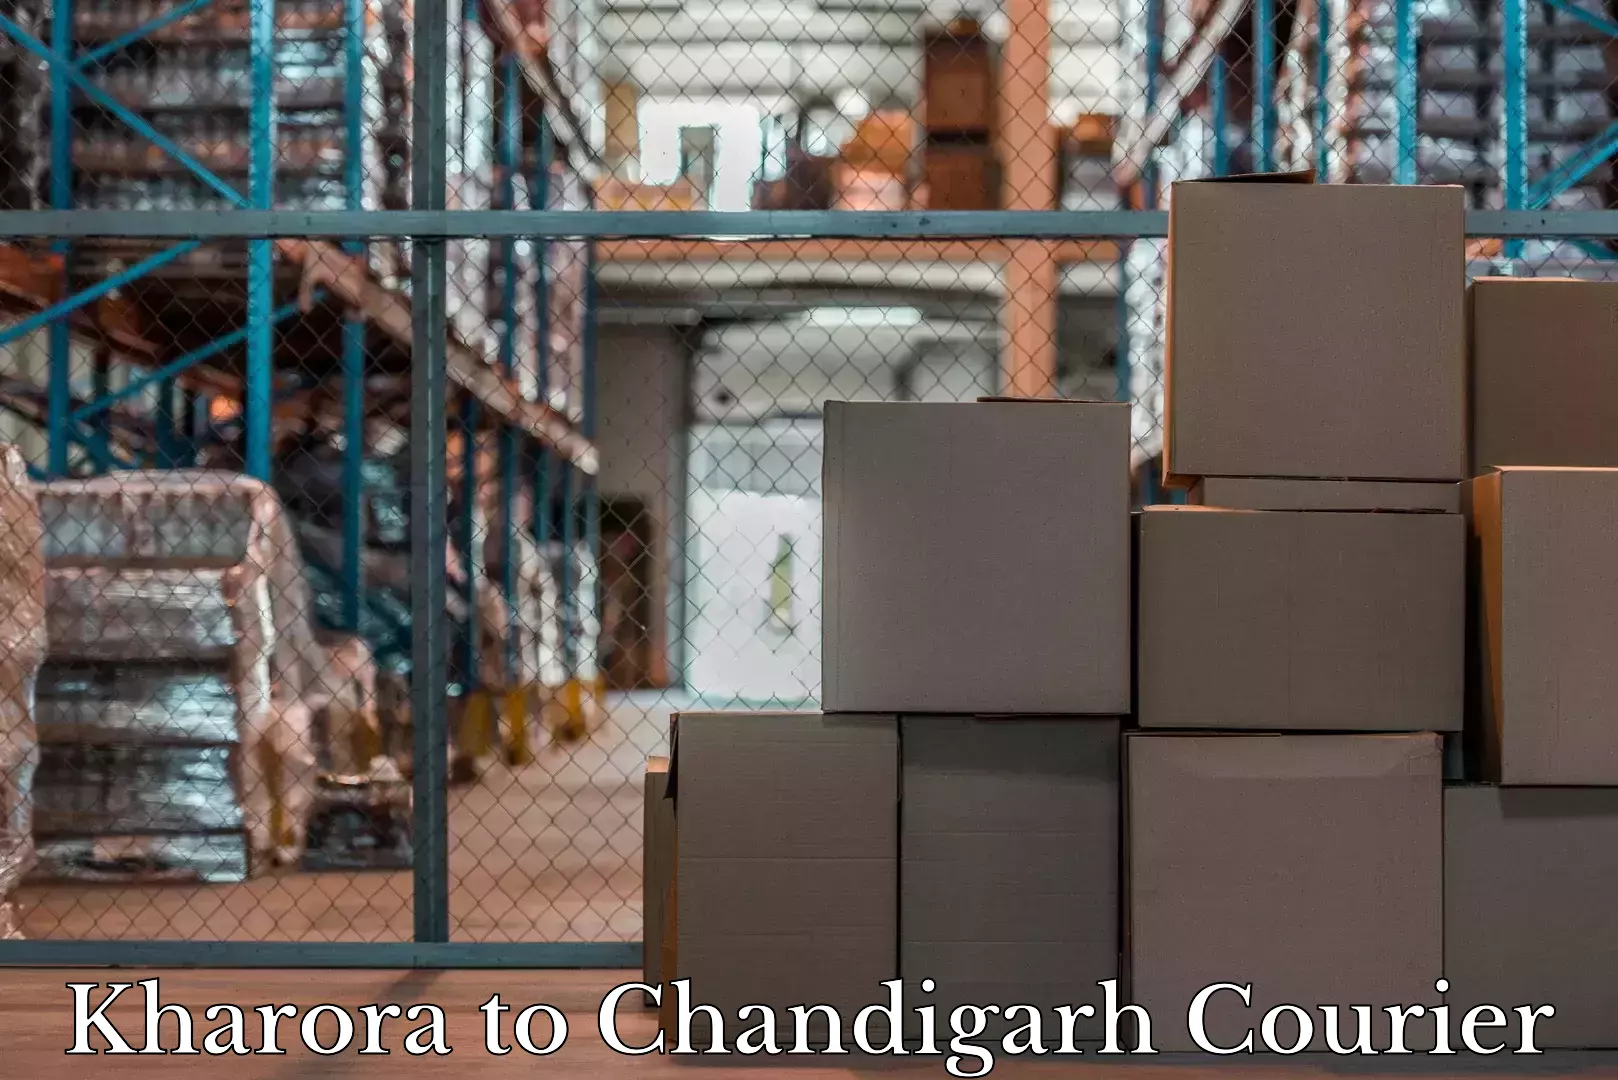 Luggage shipment tracking Kharora to Chandigarh